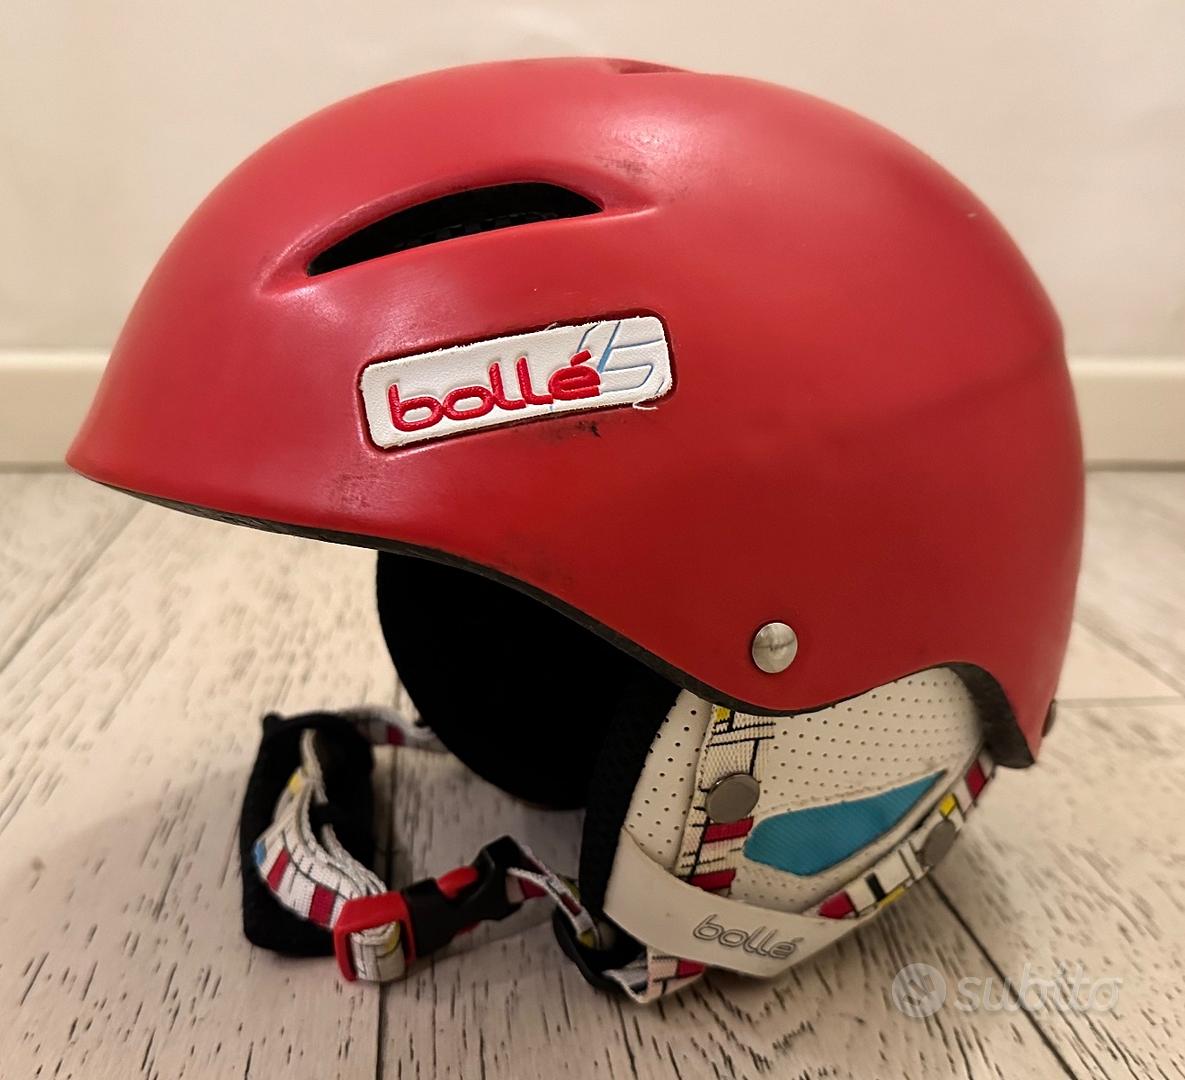 casco sci adulto Bollé rosso - Sports In vendita a Brescia